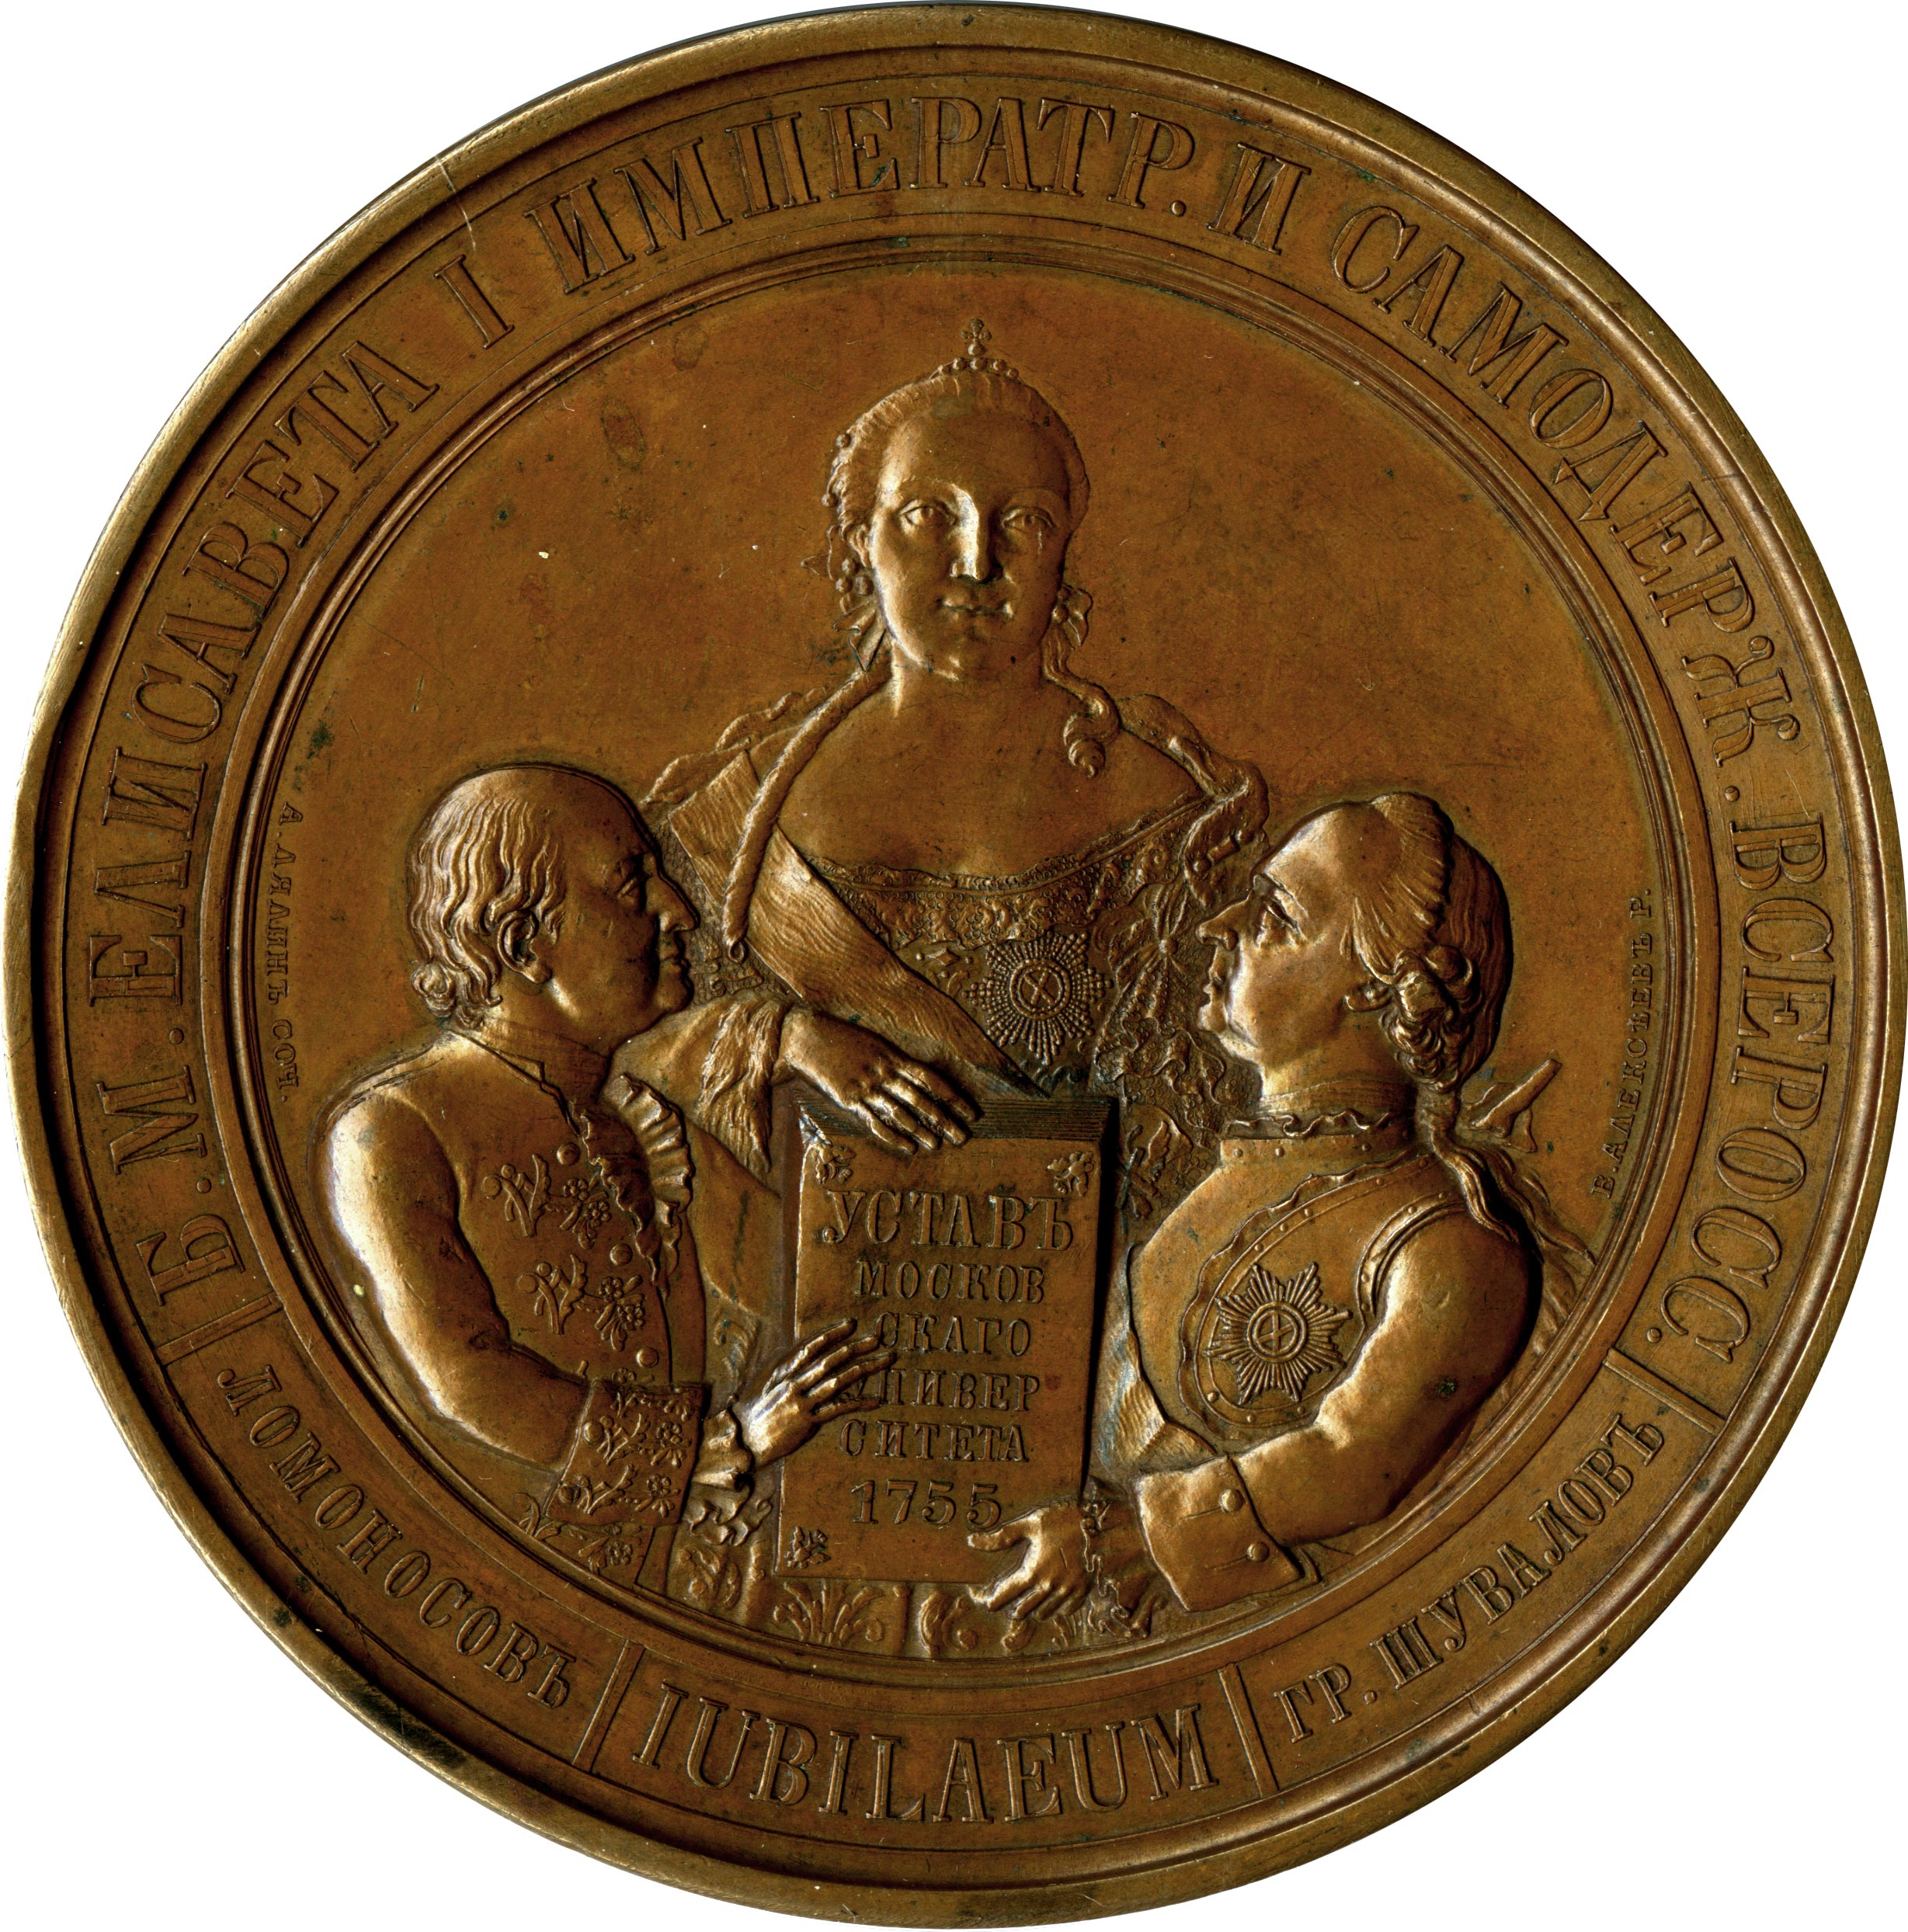 Бесплатная памятная медаль. Наградная медаль Московского университета. 1755 Г.. Медалей Московского университета 1835.